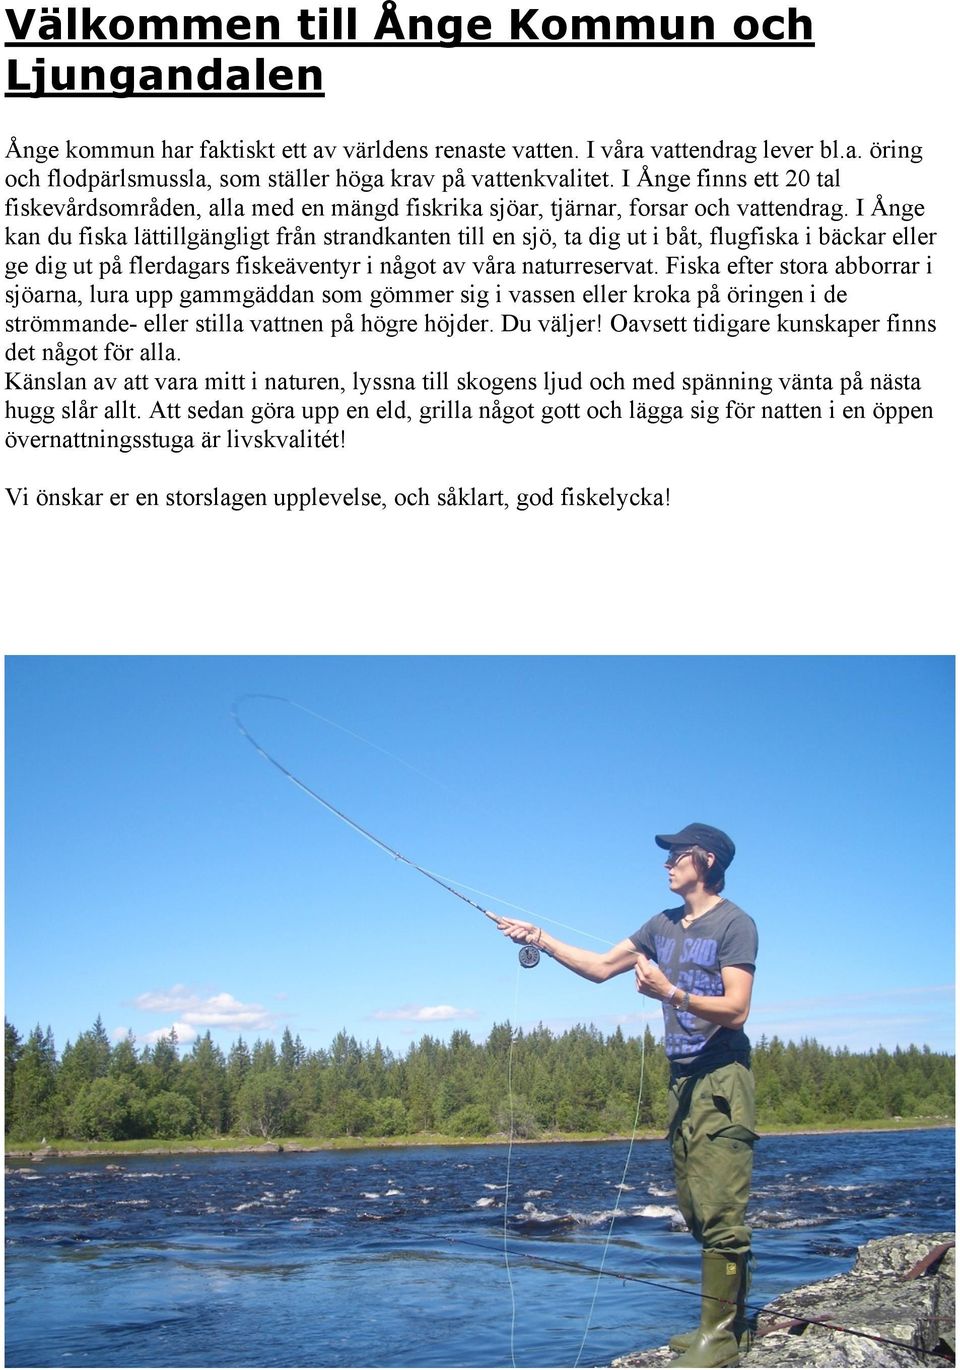 I Ånge kan du fiska lättillgängligt från strandkanten till en sjö, ta dig ut i båt, flugfiska i bäckar eller ge dig ut på flerdagars fiskeäventyr i något av våra naturreservat.